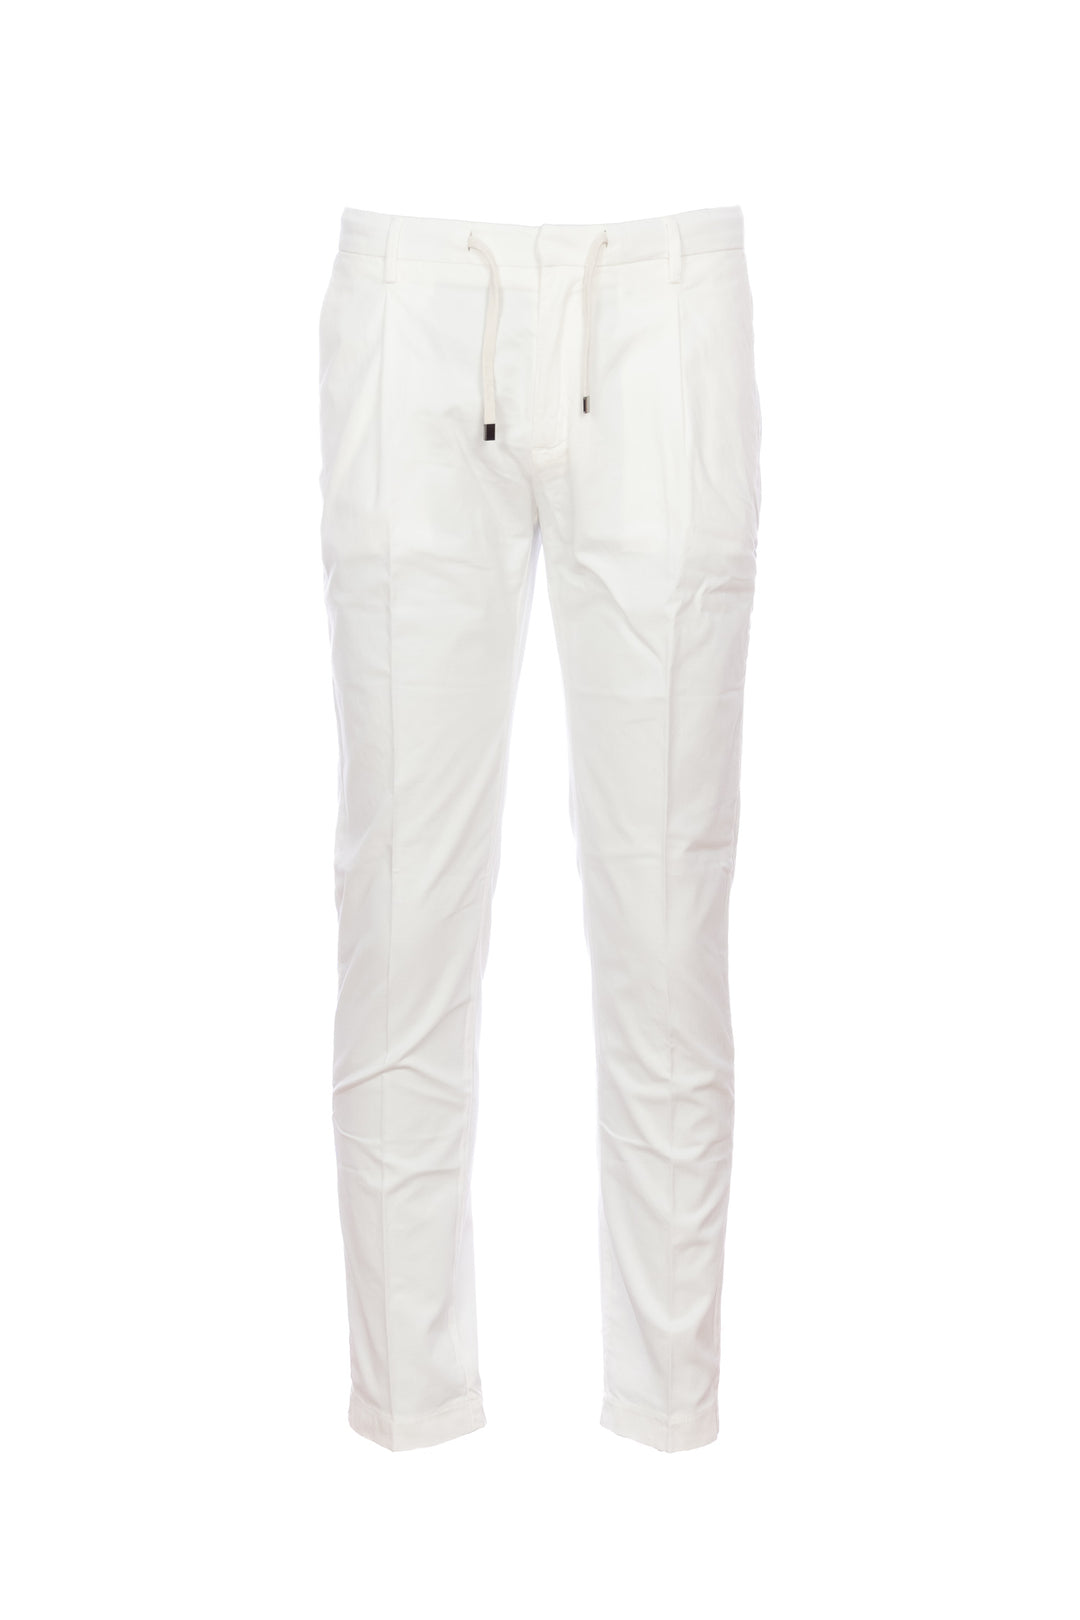 YAN SIMMON Pantalone “LIFE” off white in misto lino e cotone elasticizzato - Mancinelli 1954